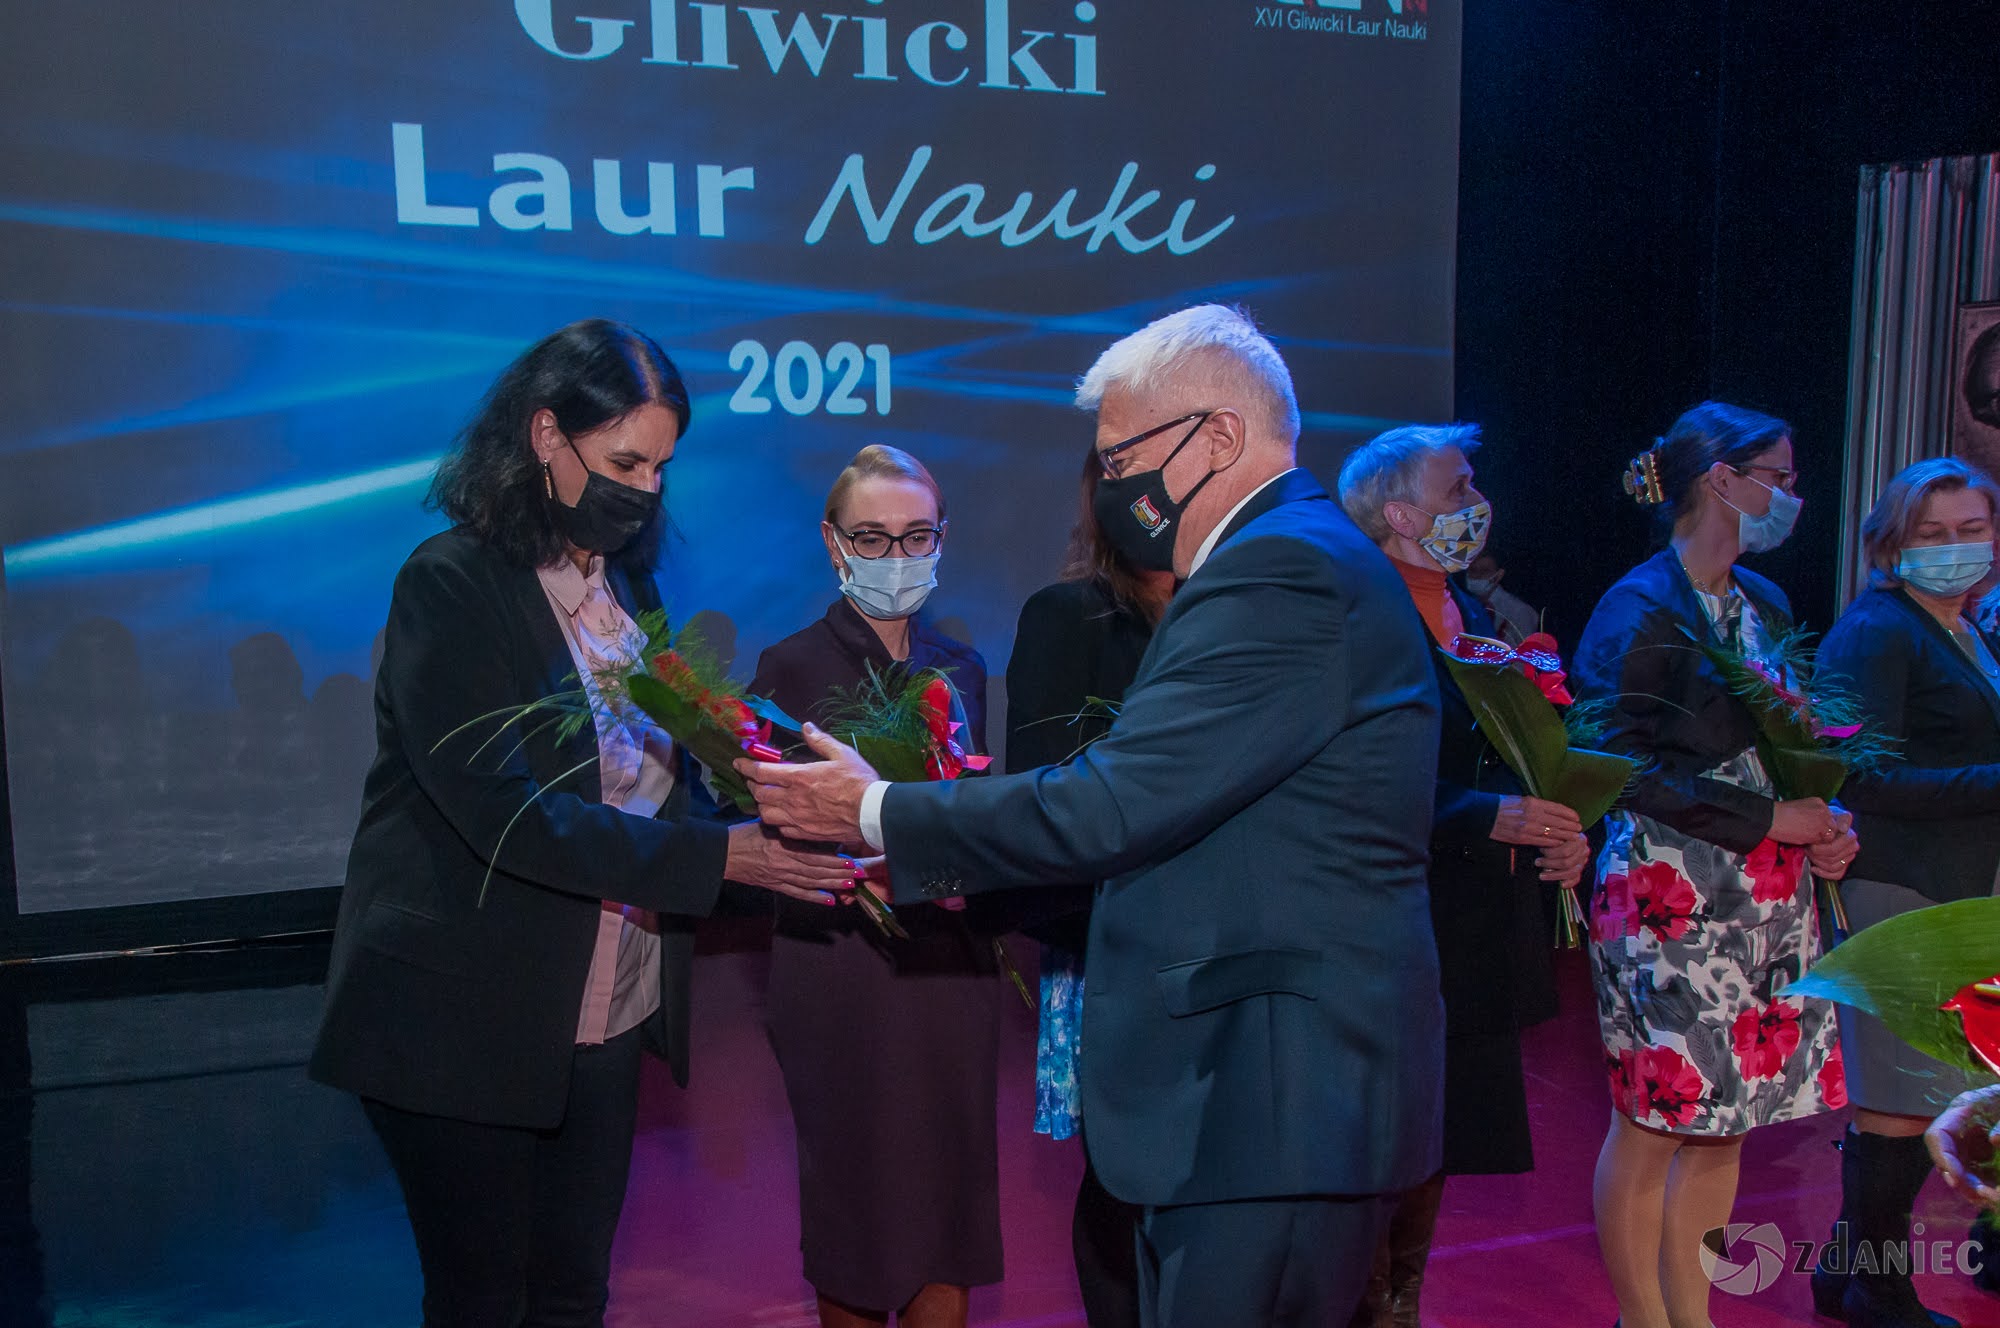 Gliwicki Laur Nauki 2021 - 14 grudnia 2021 r. - foto: Zdzisław Daniec